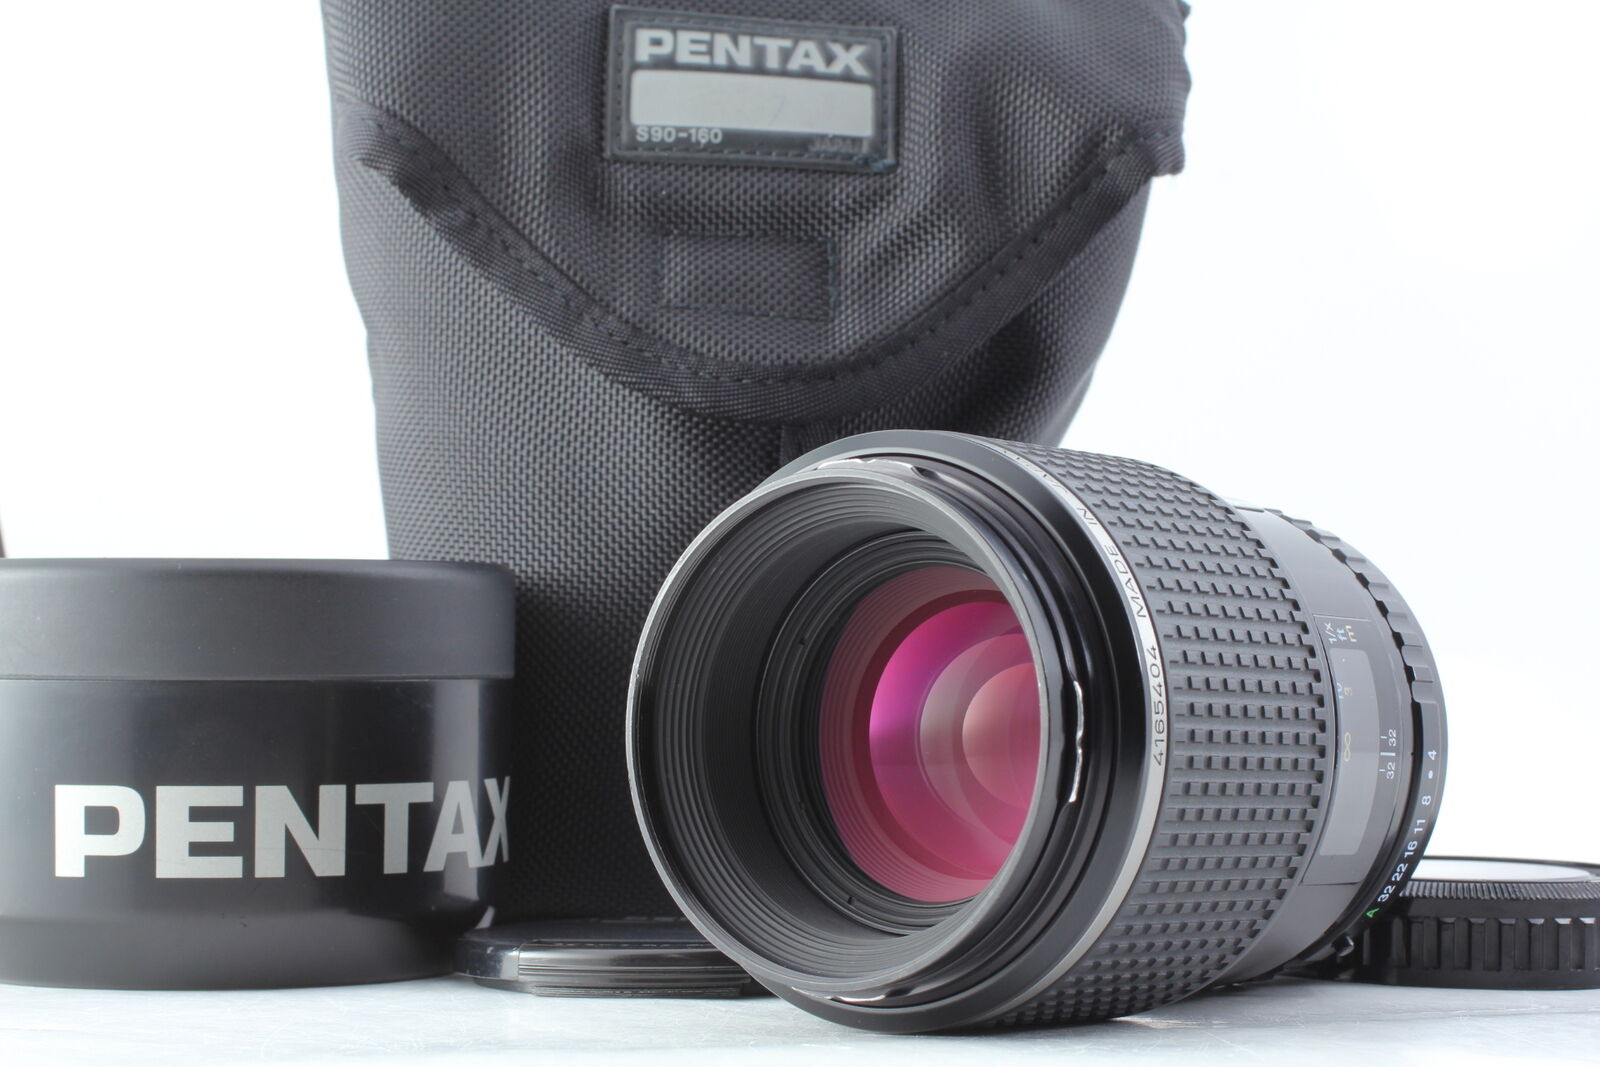 カメラ レンズ(ズーム) PENTAX FA645 120mm F4 Macro Lens - Black for sale online | eBay